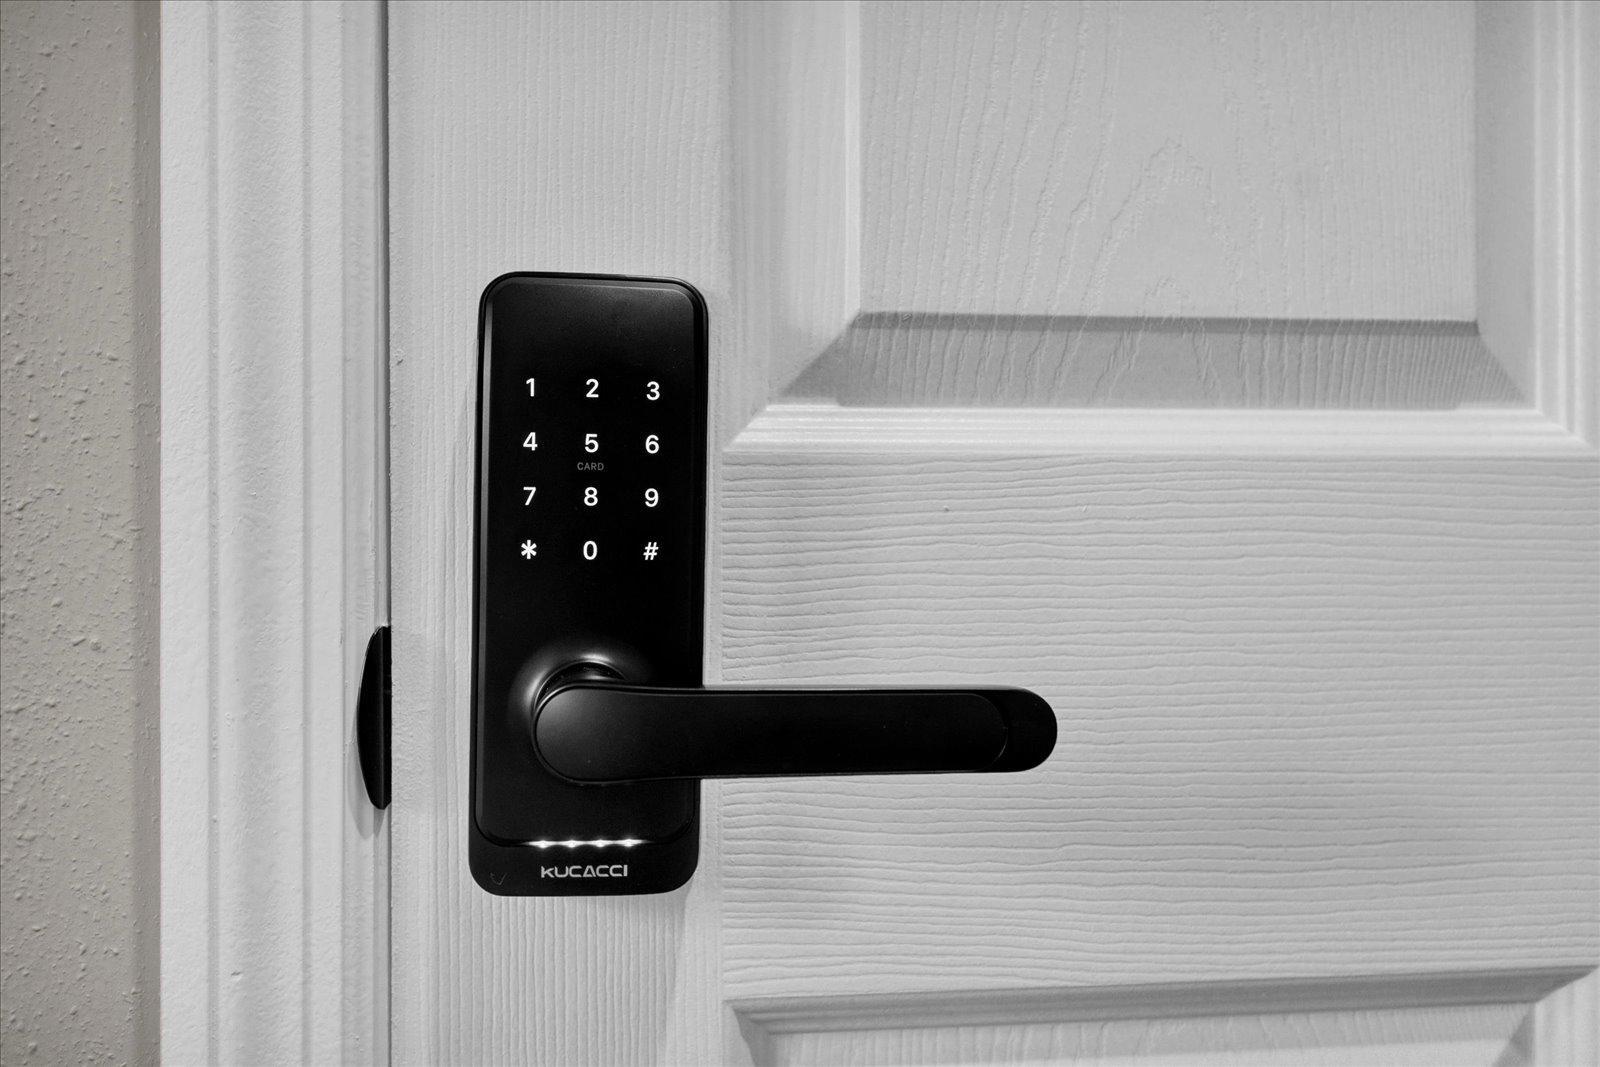 Electric door lock with secure code!